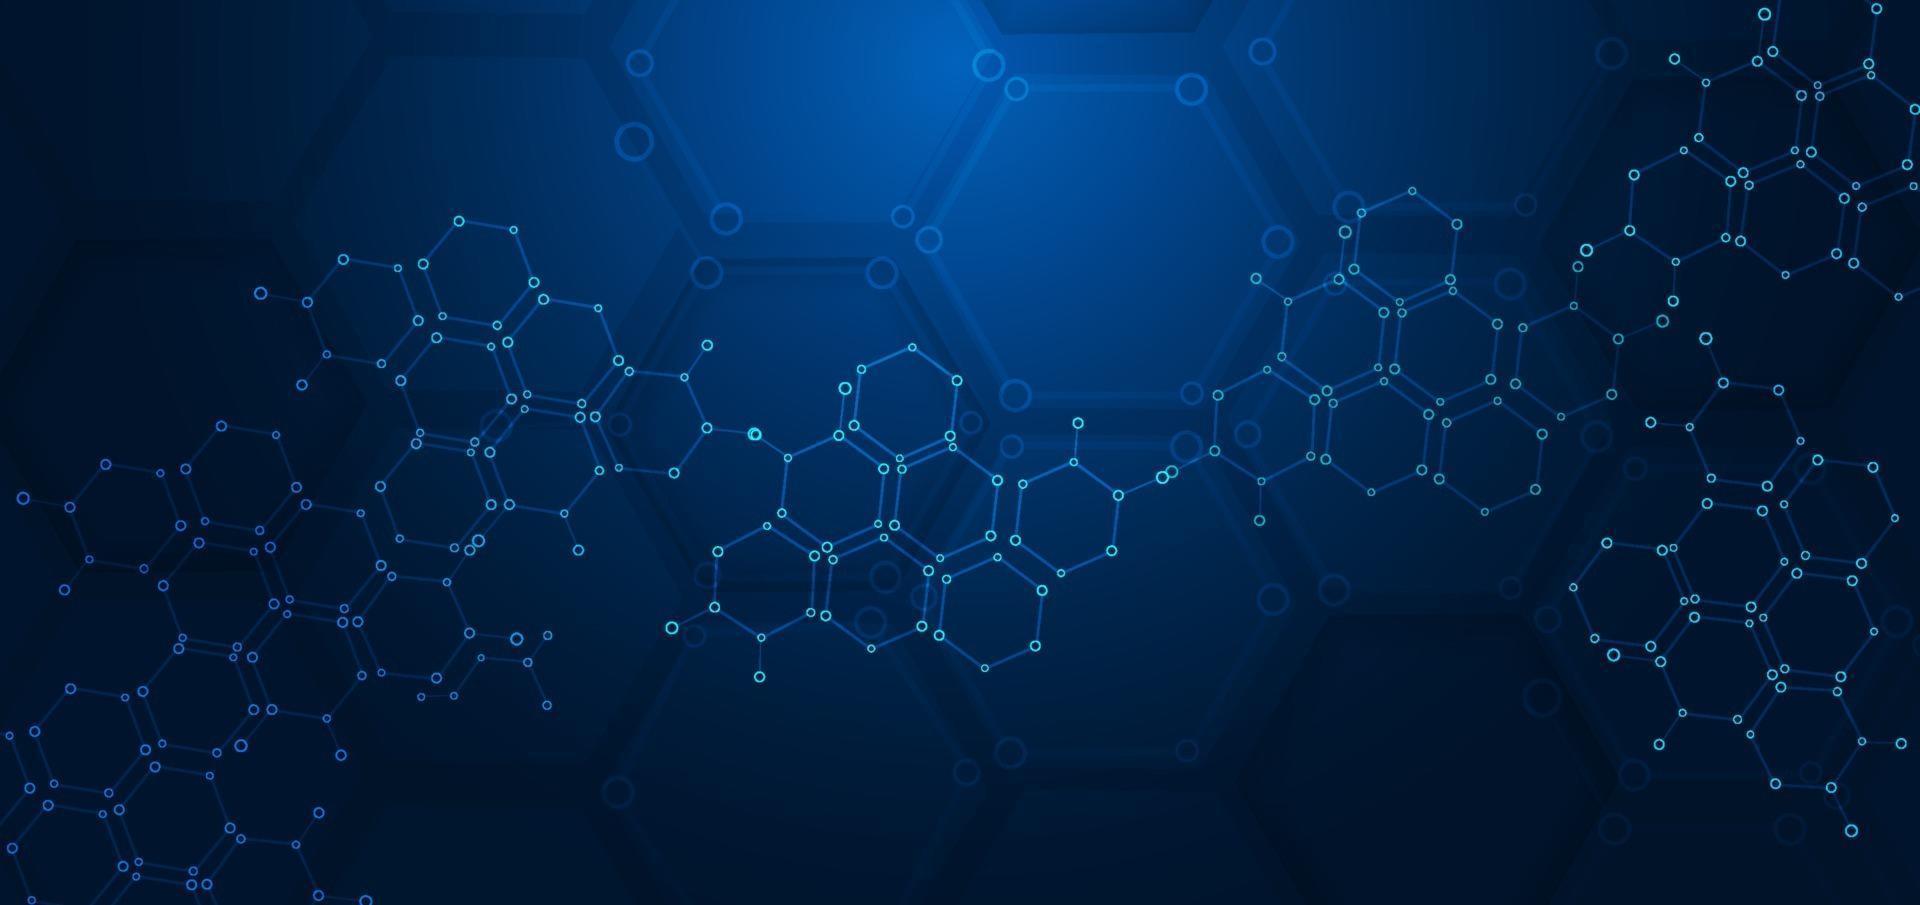 patrón hexagonal abstracto fondo azul oscuro. concepto médico y científico. estructuras moleculares. vector